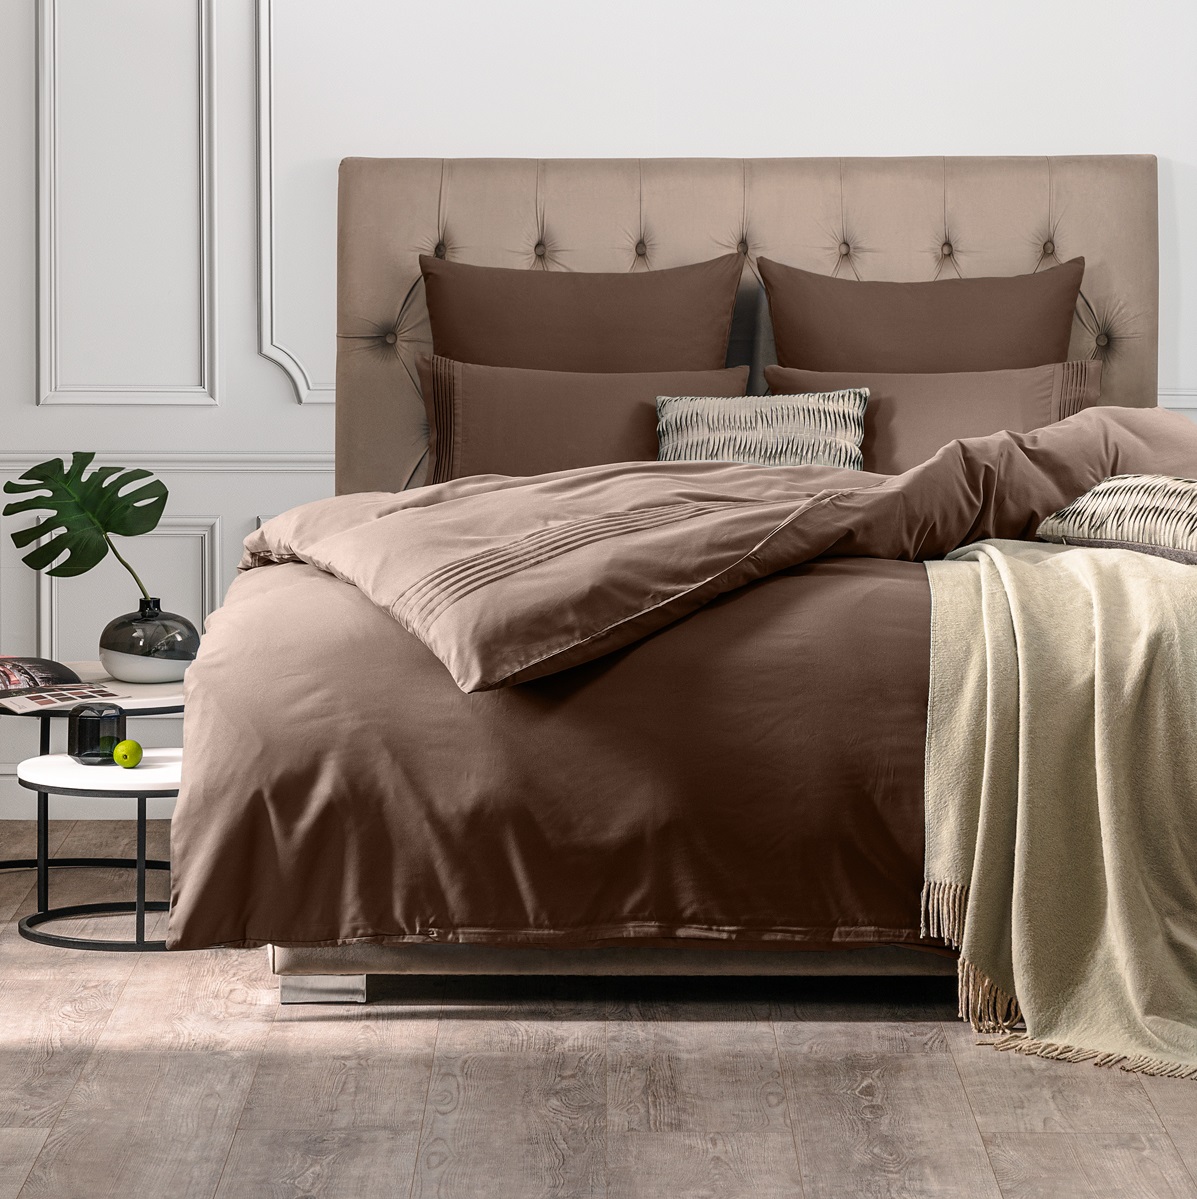 Комплект постельного белья Sleepix Миоко коричневый Евро, размер Евро